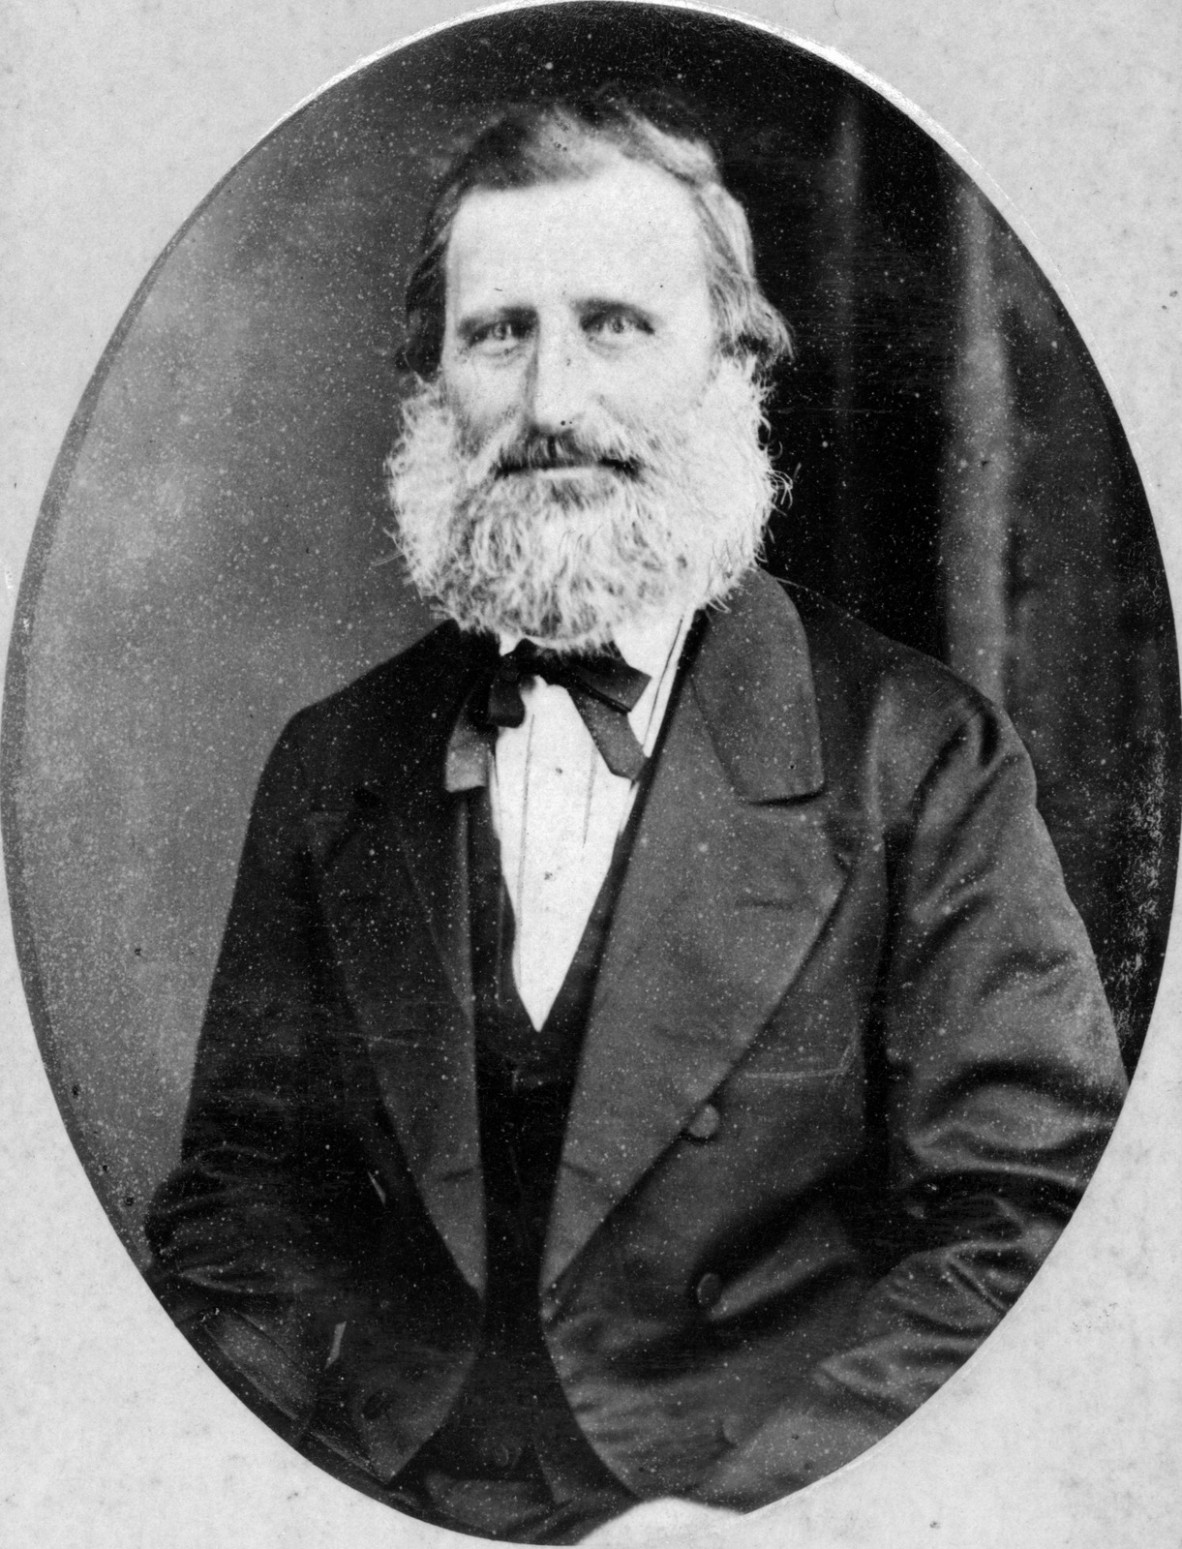 Black and white portrait of William Pettigrew Brisbane ca 1875